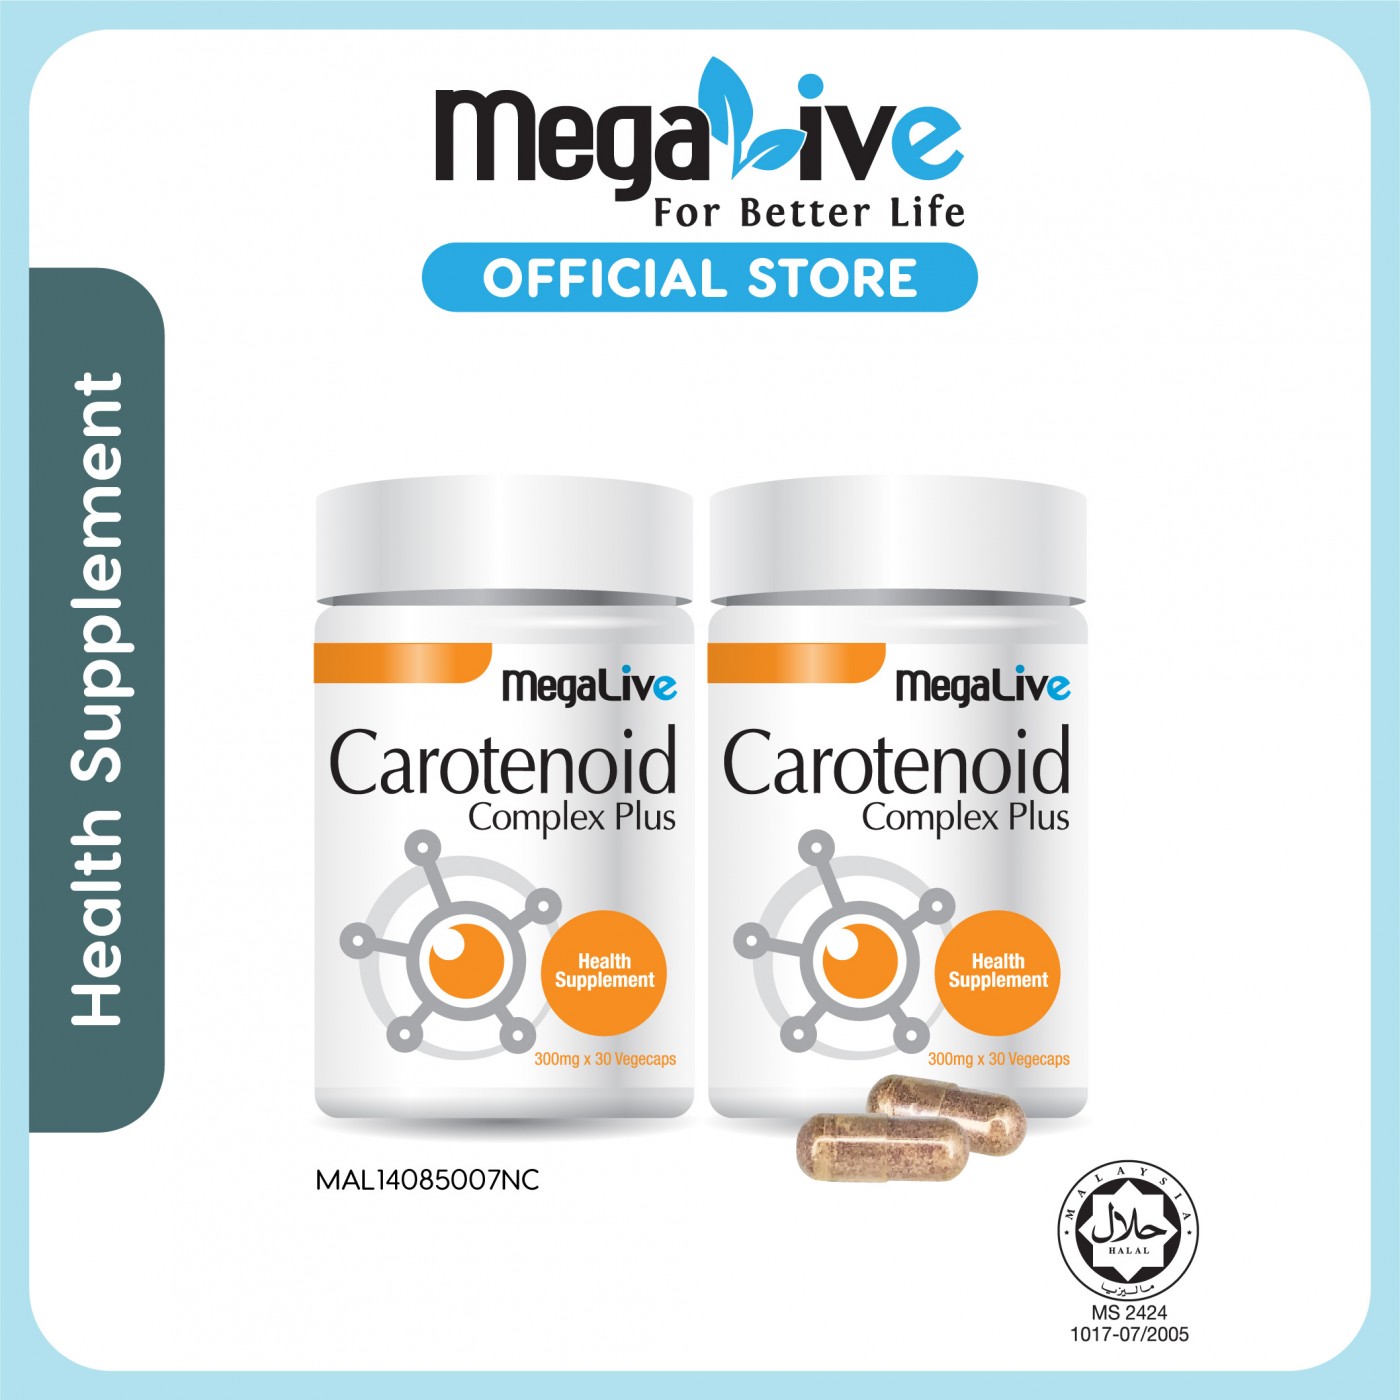 MegaLive Carotenoid Complex Plus